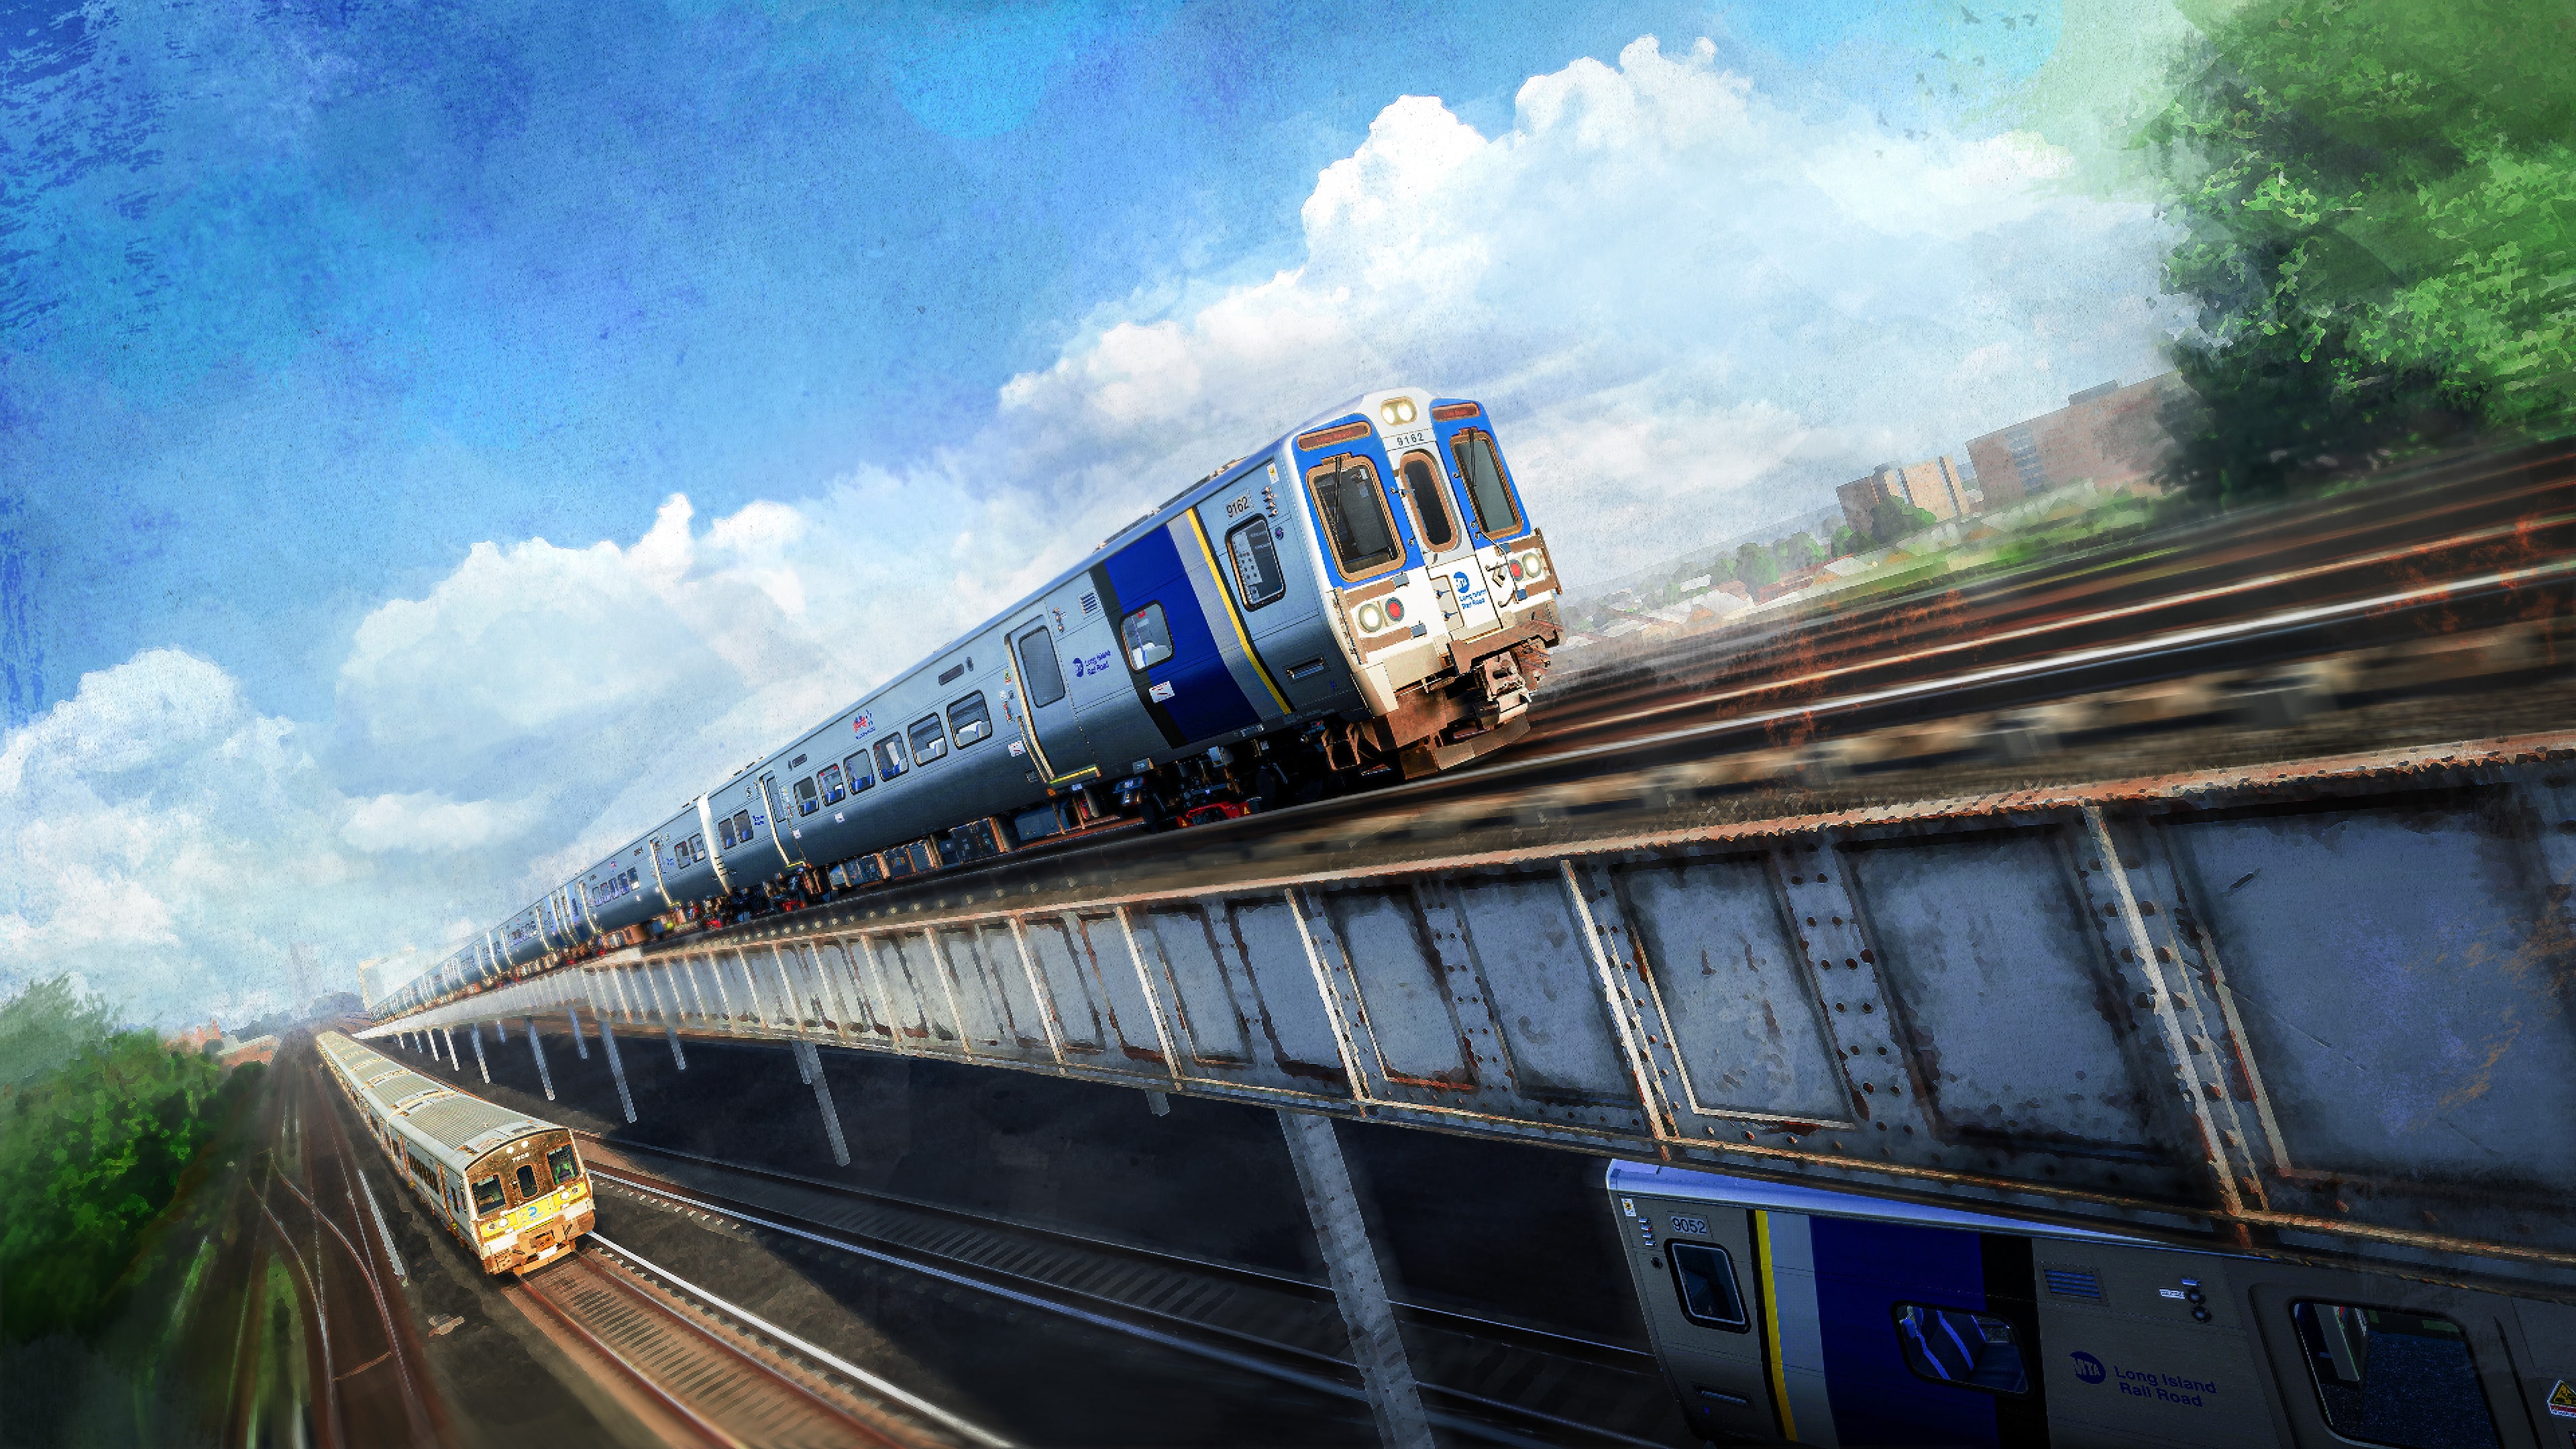 Train Sim World 4: LIRR Commuter: New York - Long Beach, Hempstead & Hicksville Route Add-On